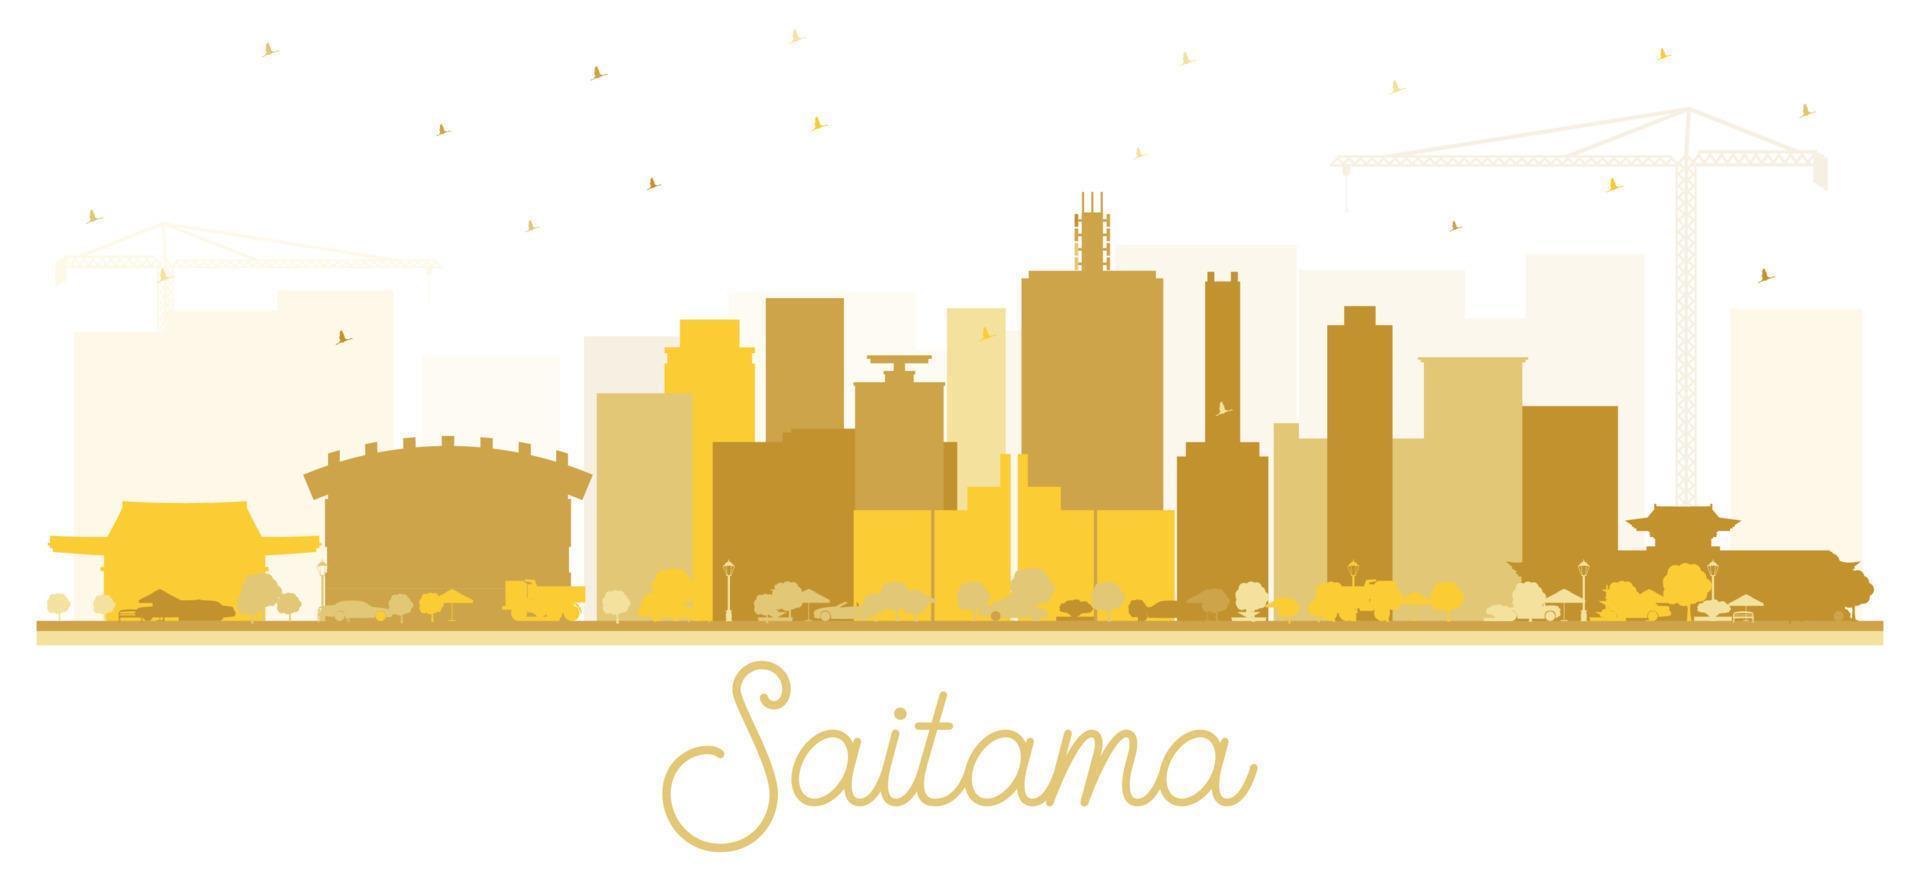 saitama japon silhouette d'horizon de la ville avec des bâtiments dorés isolés sur blanc. vecteur